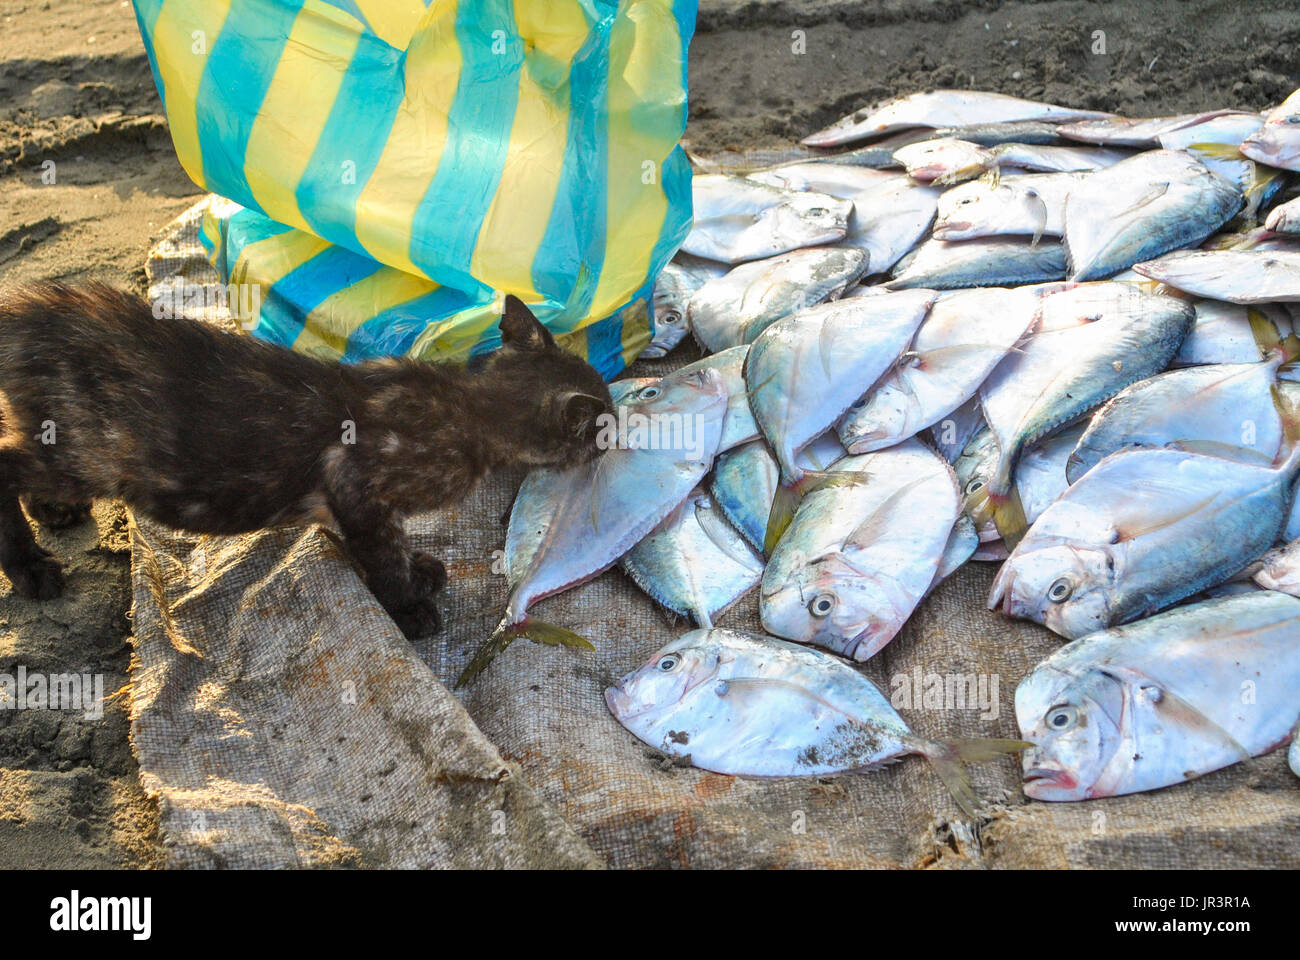 Le Kitty et le Péruvien moonfish ou Carita (Selene peruviana) dans le marché aux poissons. Manta. L'Équateur. Banque D'Images